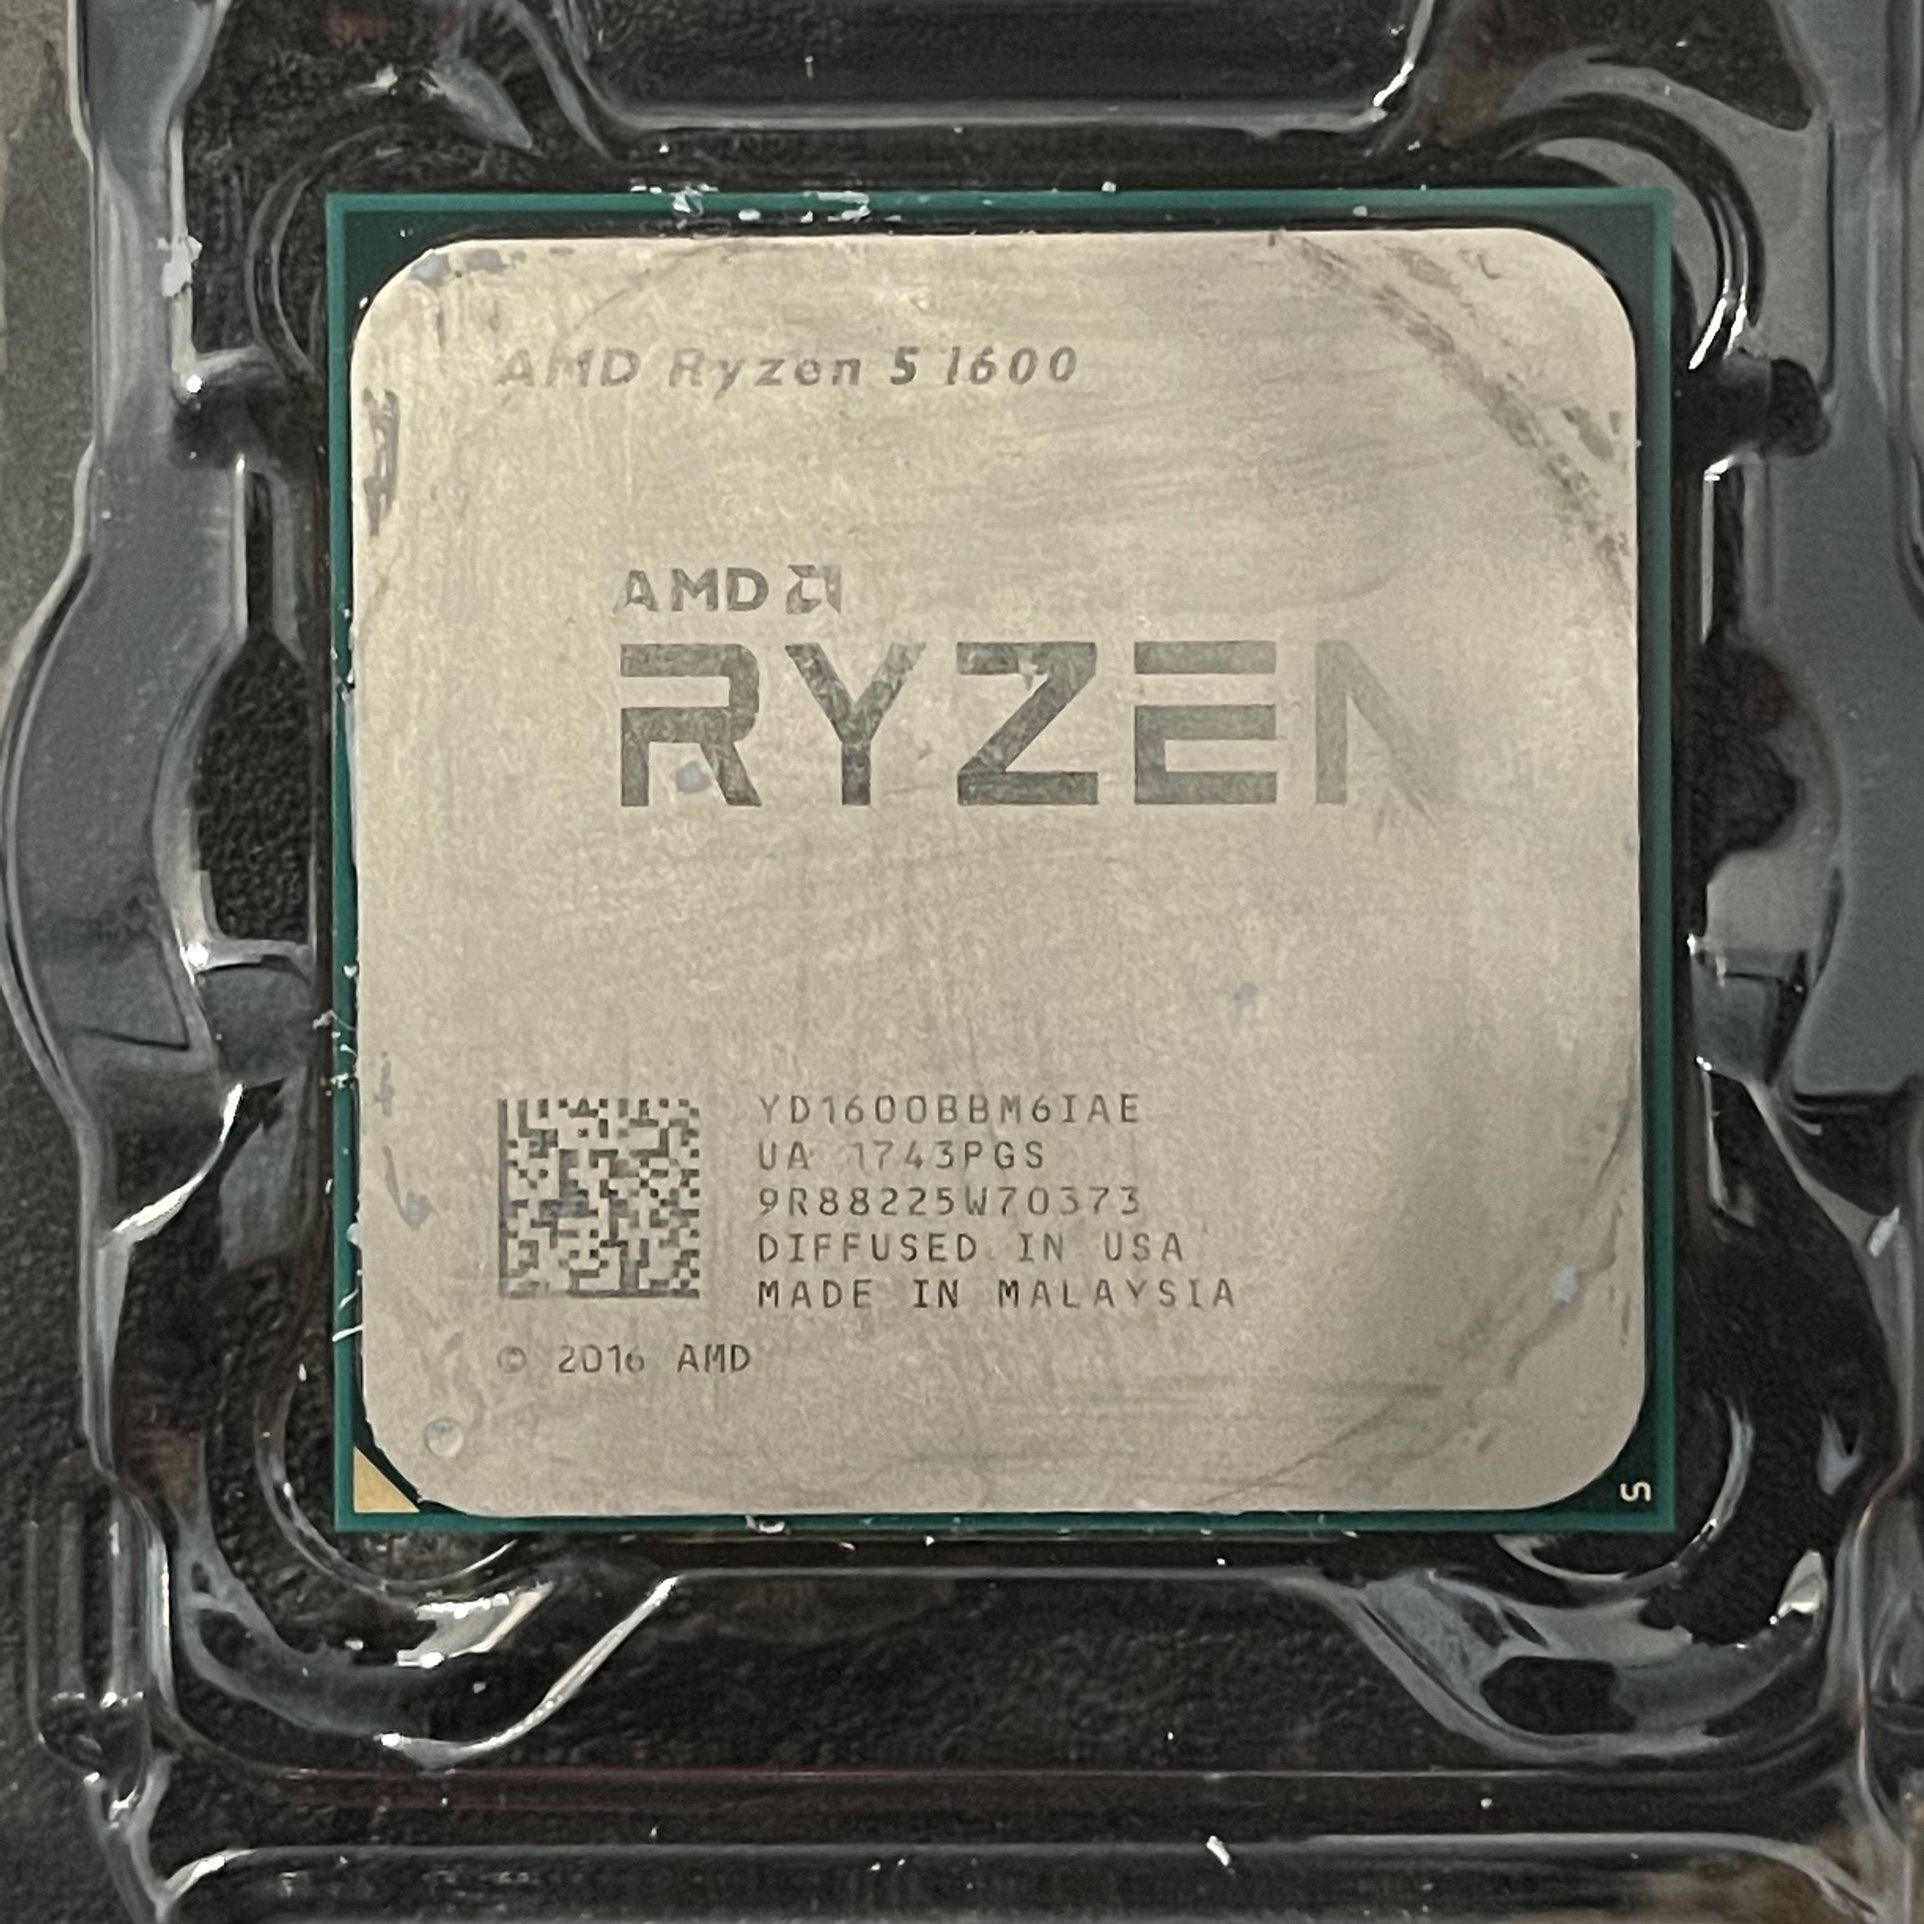 AMD Ryzen 5 1600 With Cooler